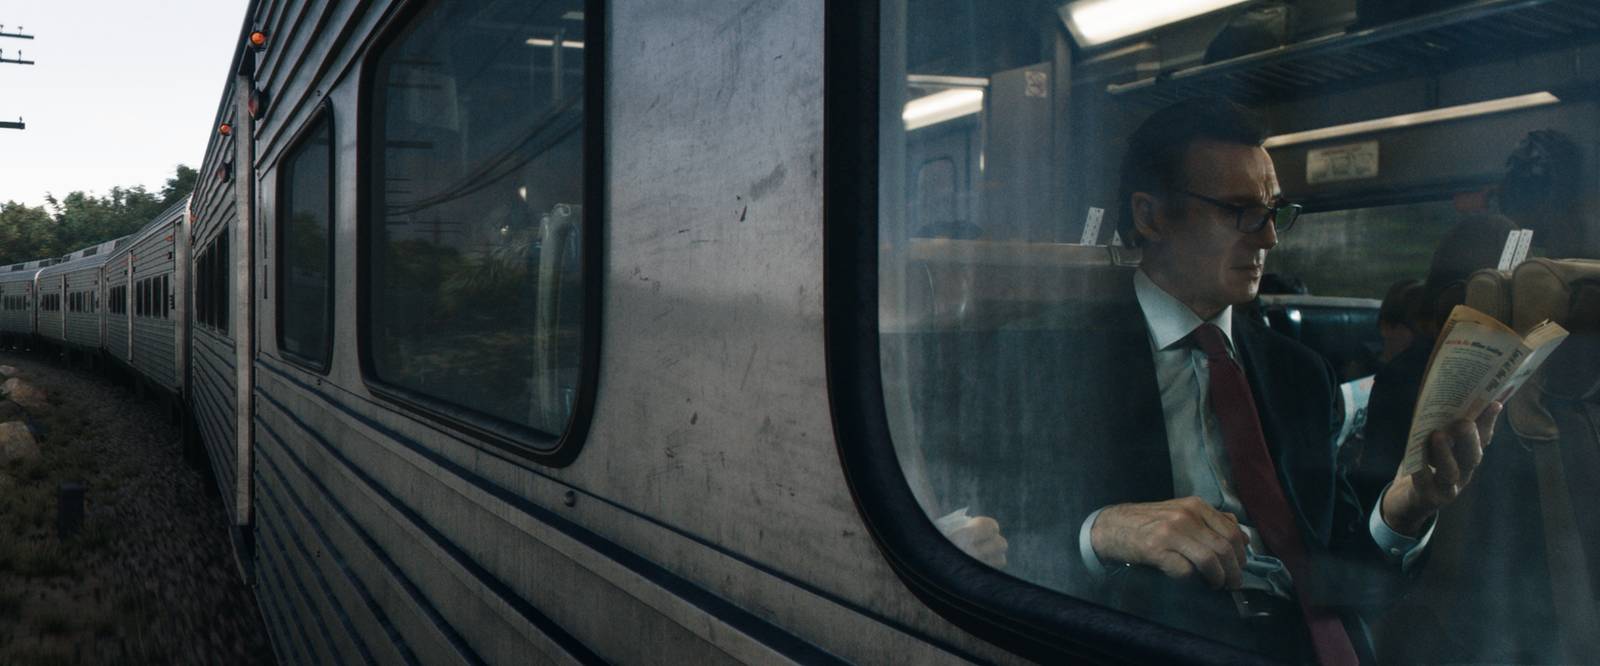 Muž vo vlaku (2018) - fotografie